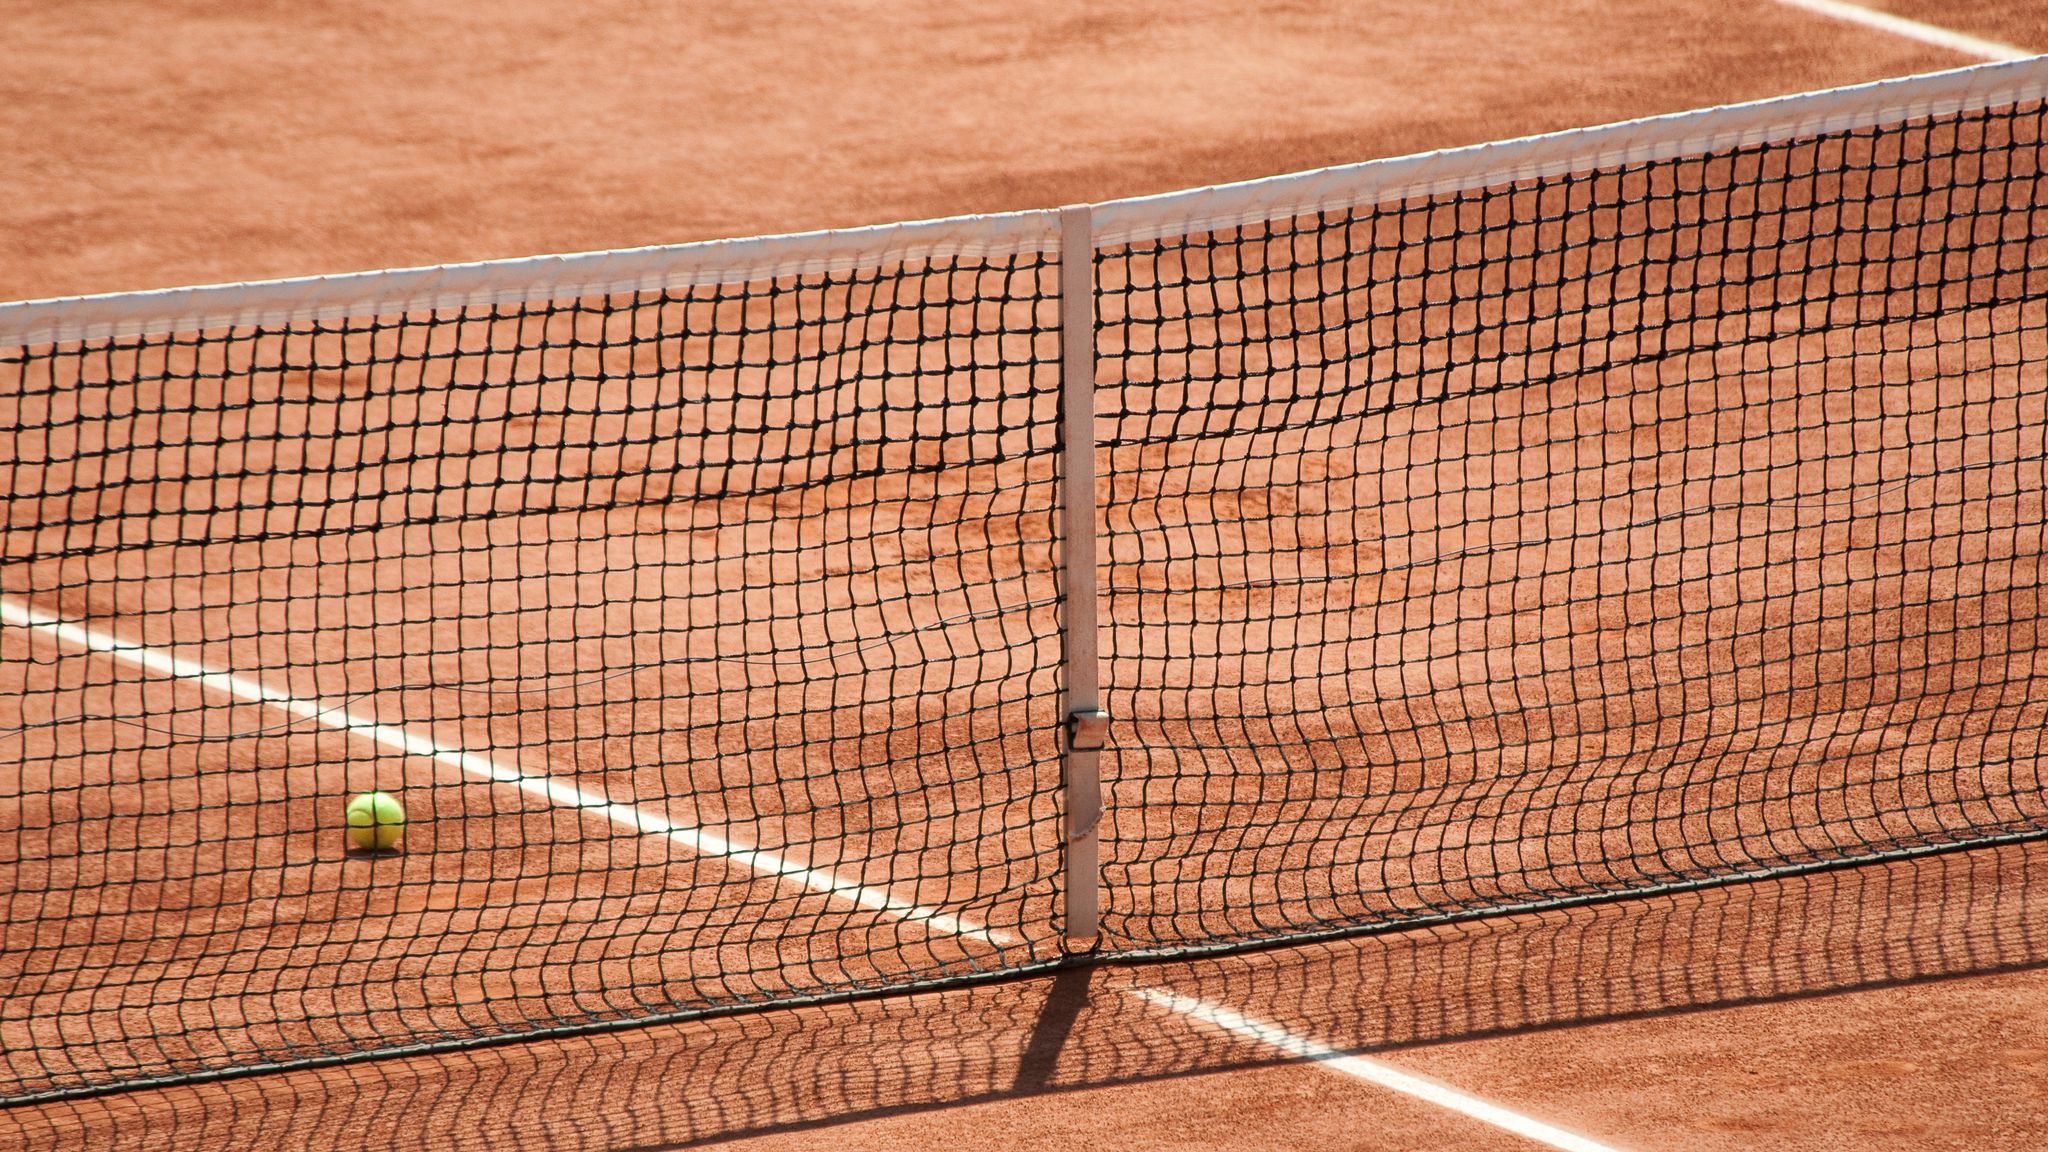 Теннис сетка игры. Теннисный корт. Теннисный корт сетка. Теннис корт. Сетка для теннисных мячей.